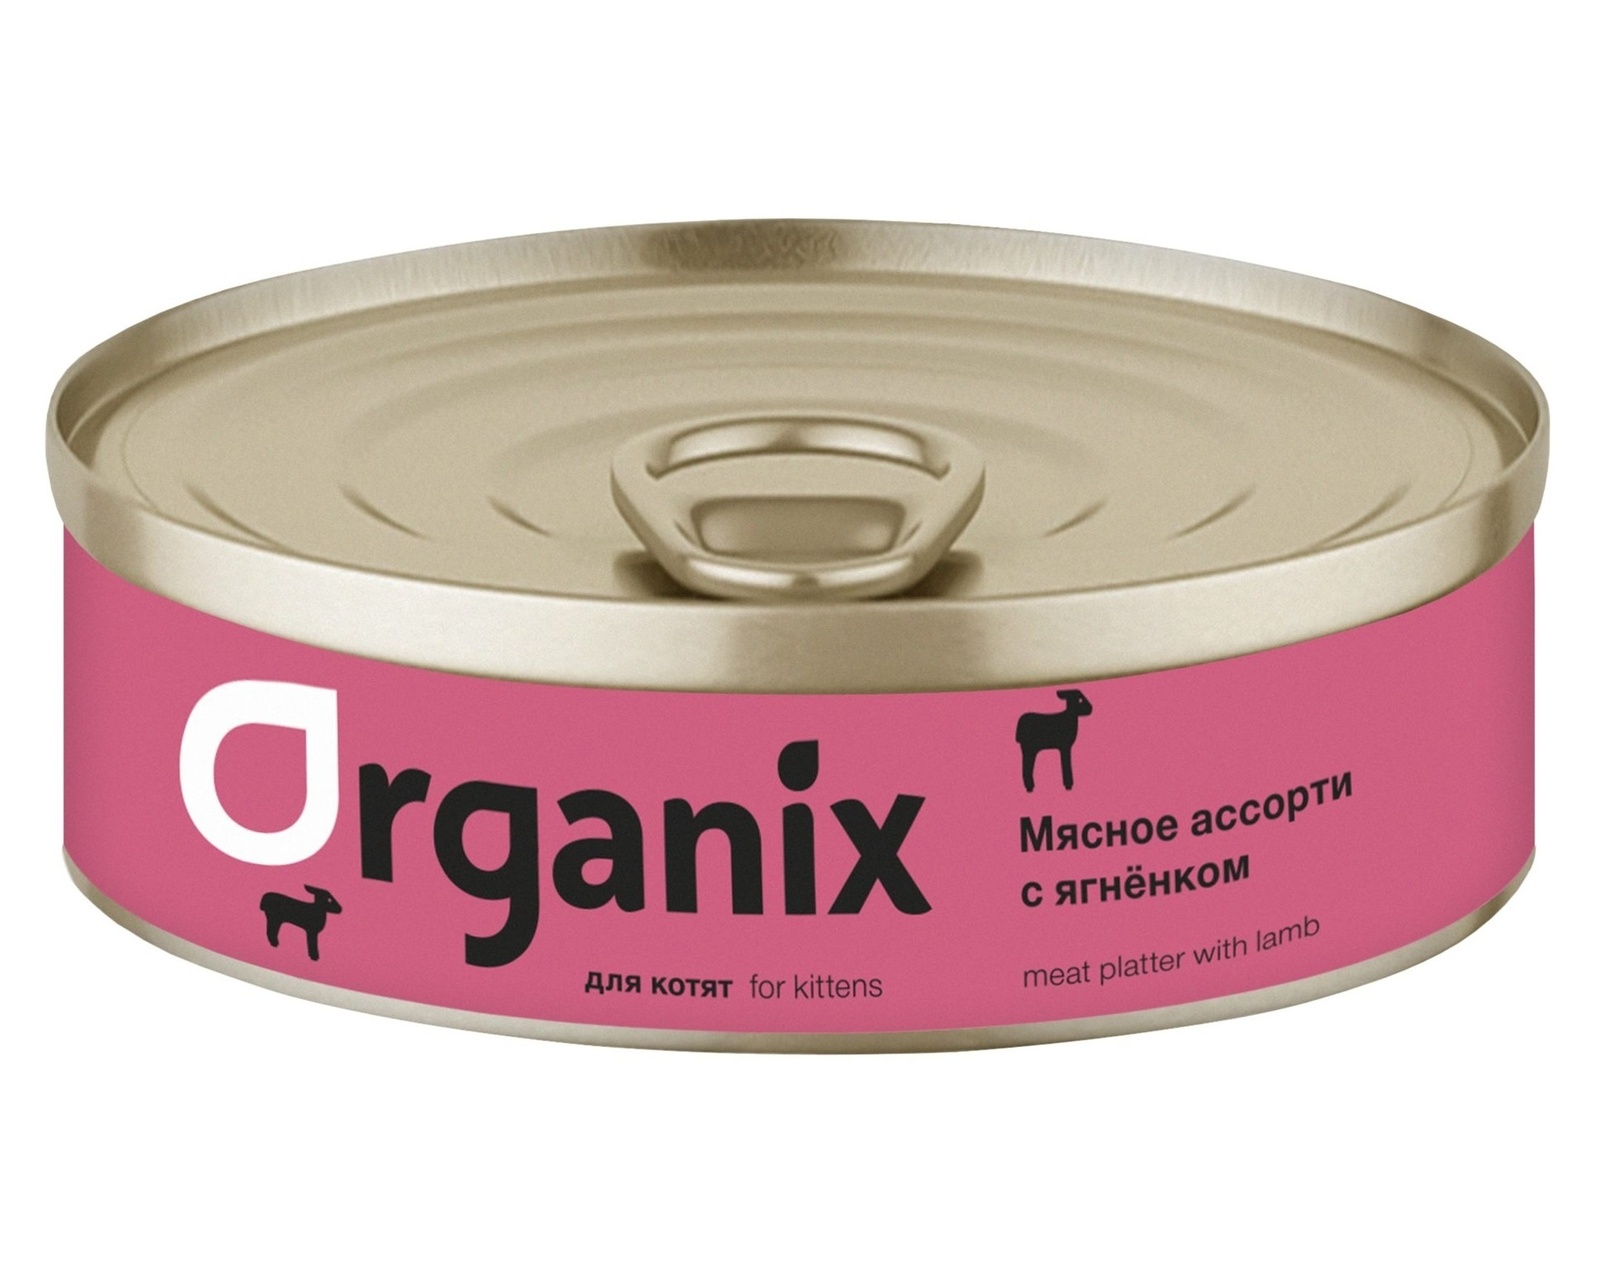 Organix консервы Organix консервы для котят Мясное ассорти с ягнёнком (100 г) organix консервы organix консервы для щенков мясное ассорти с кроликом 100 г